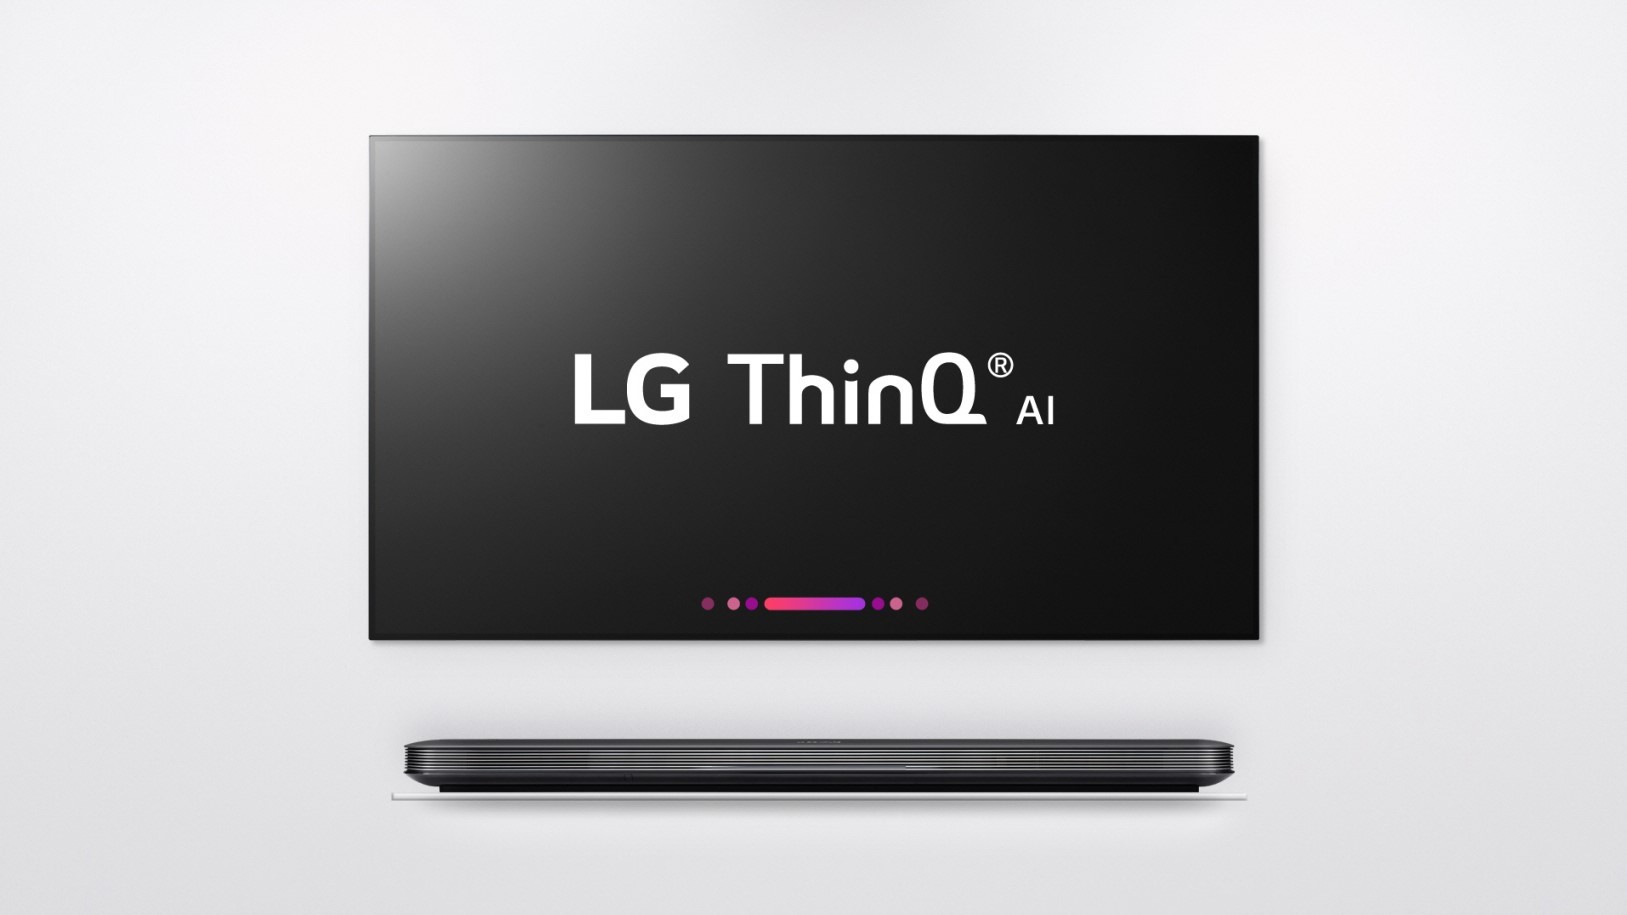 Телевизоры LG станут быстрее и умнее с новым ИИ-процессором